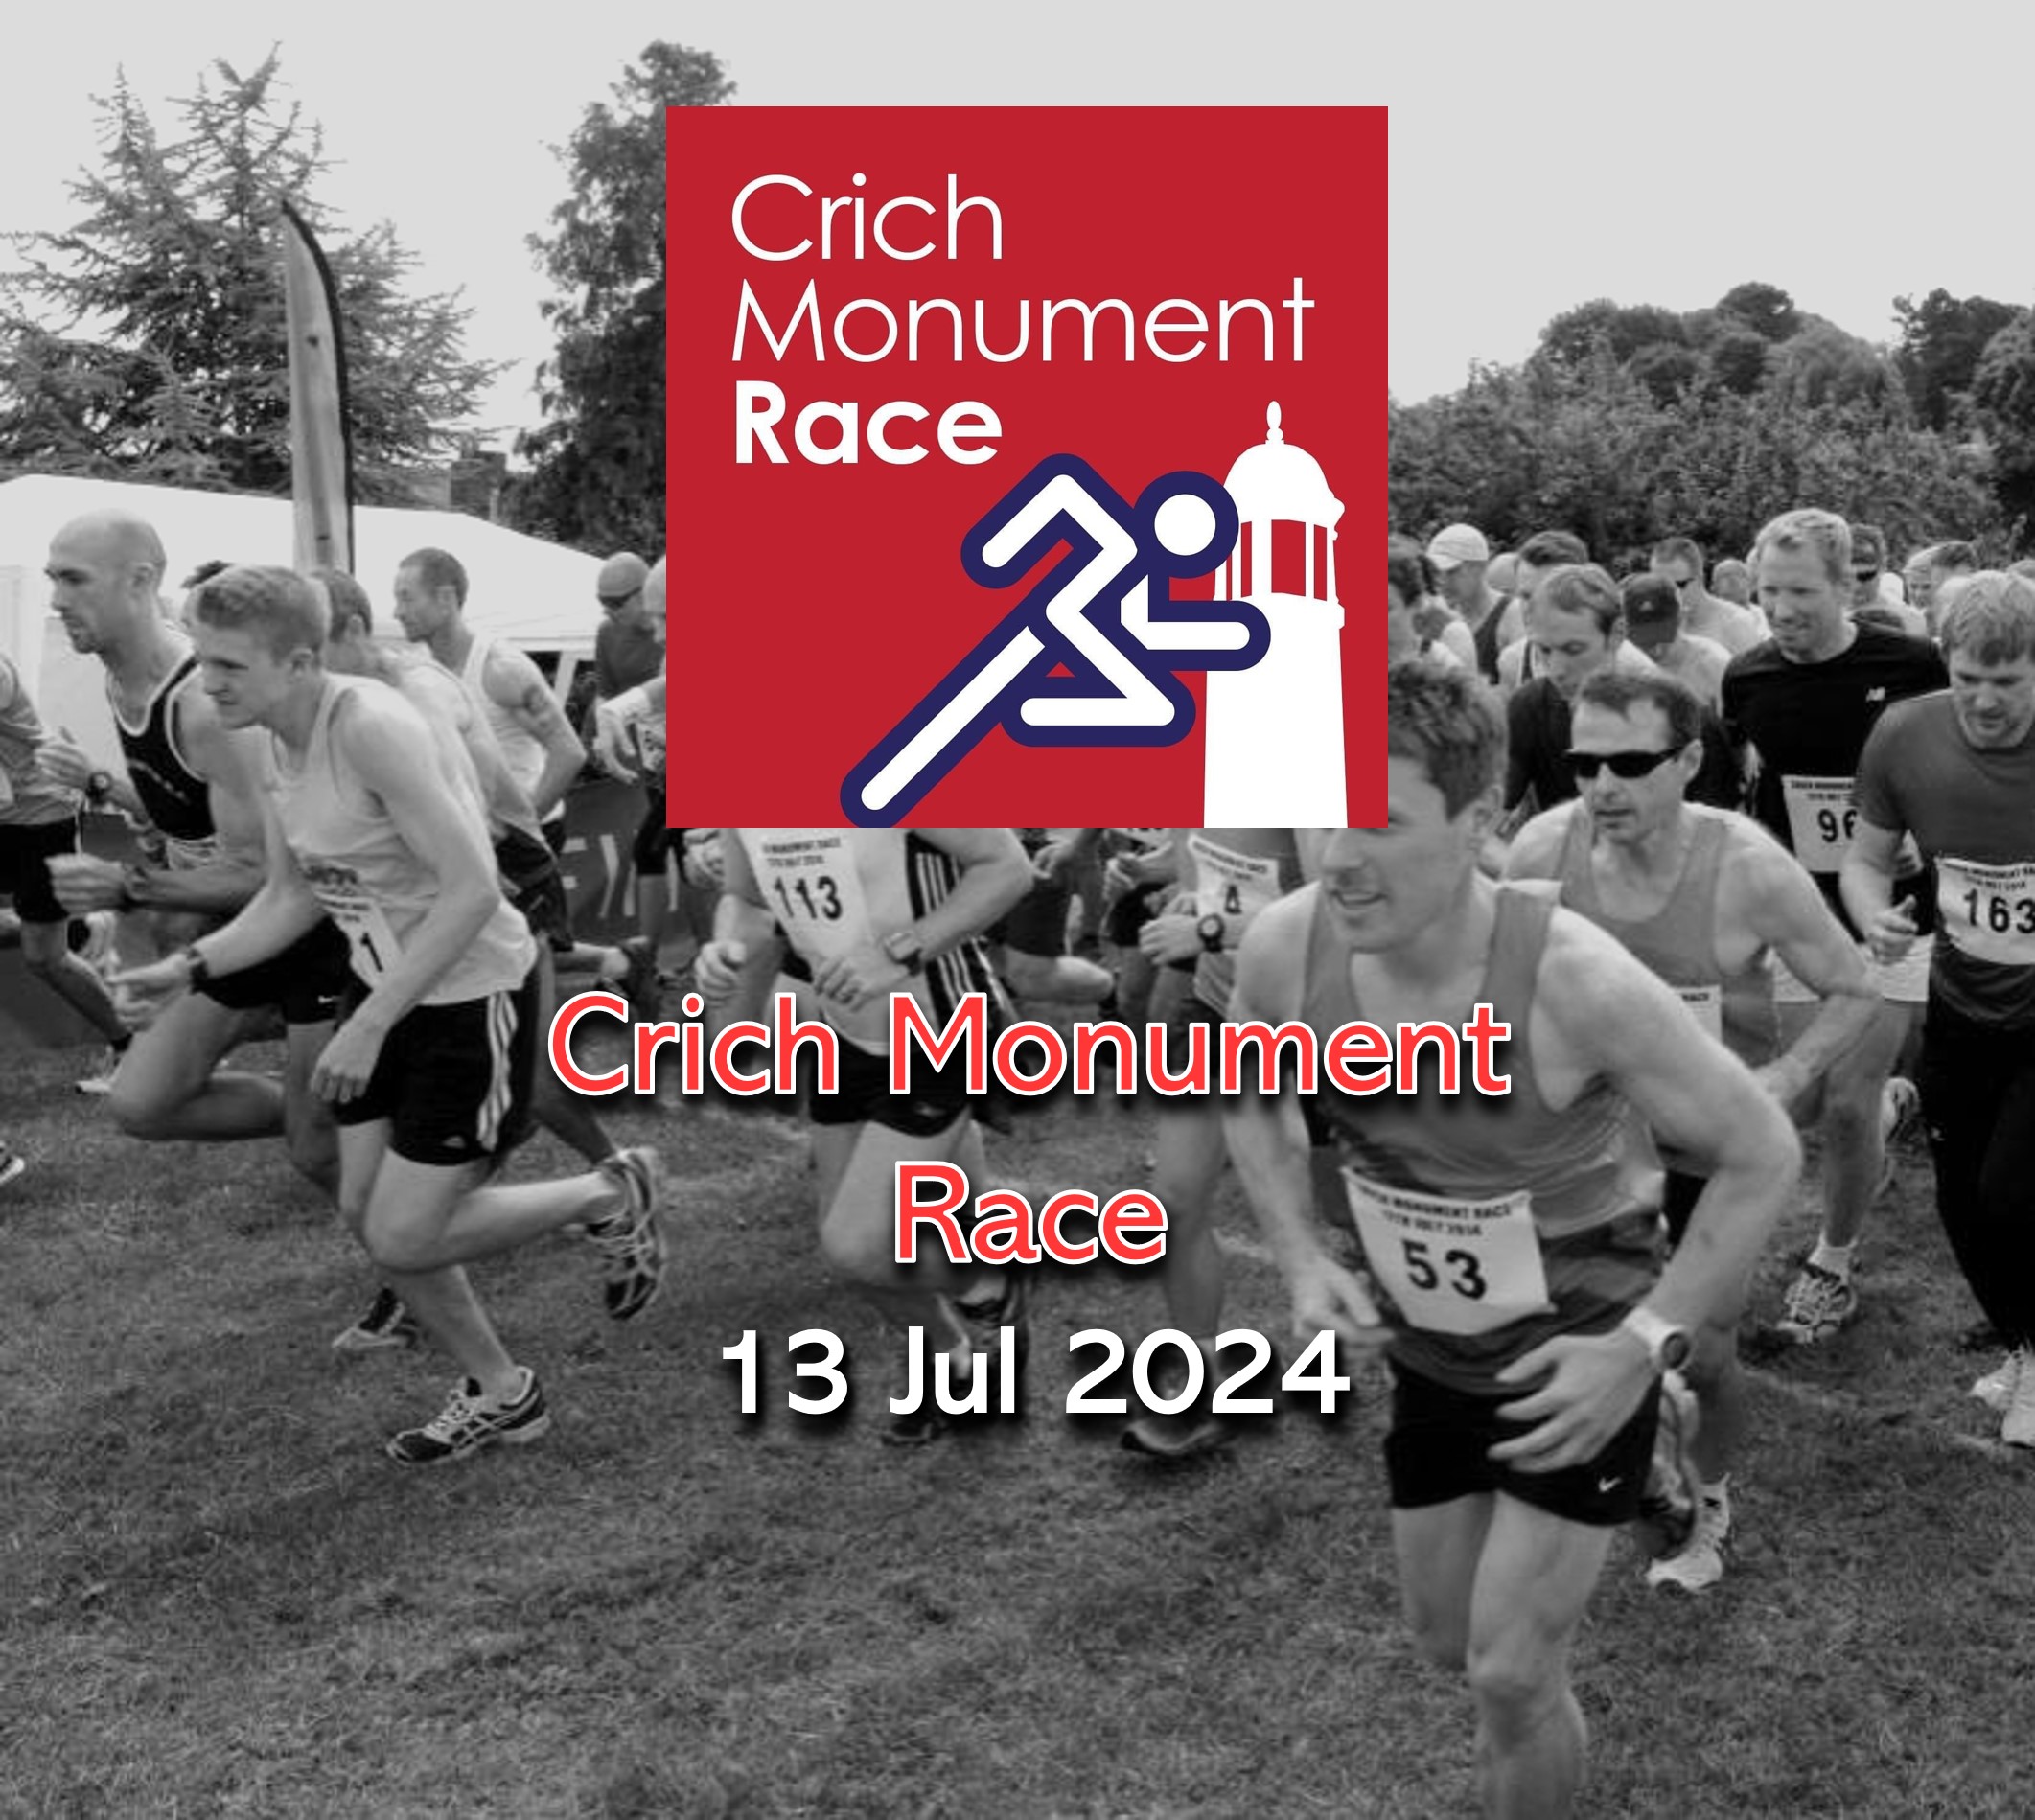 Crich Monument Race 2024